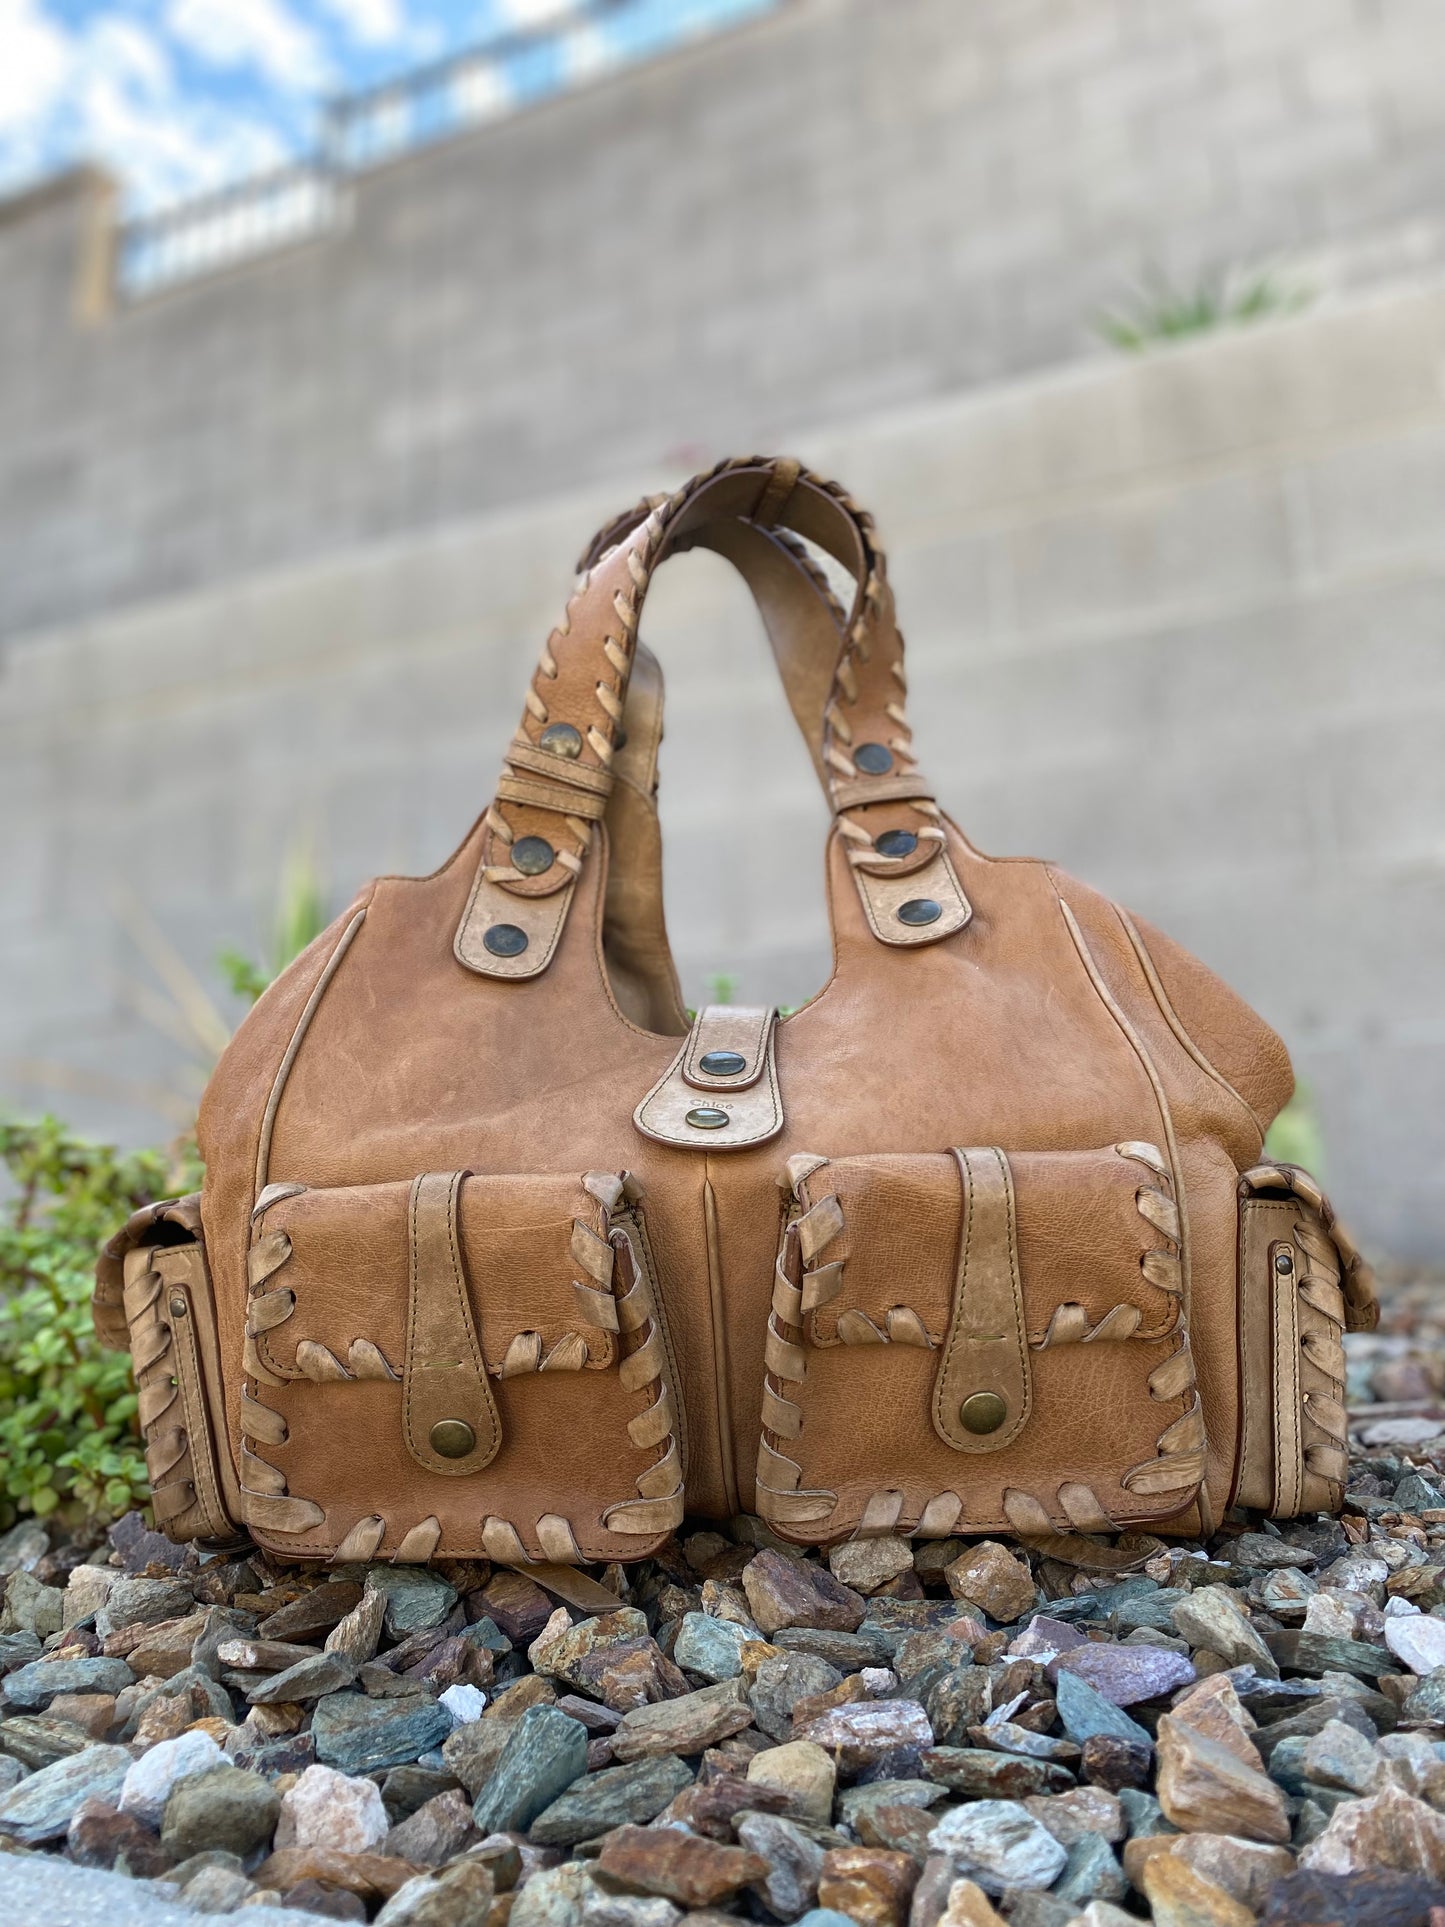 Chloé Silverado Vintage Whipstitch Leather Tote